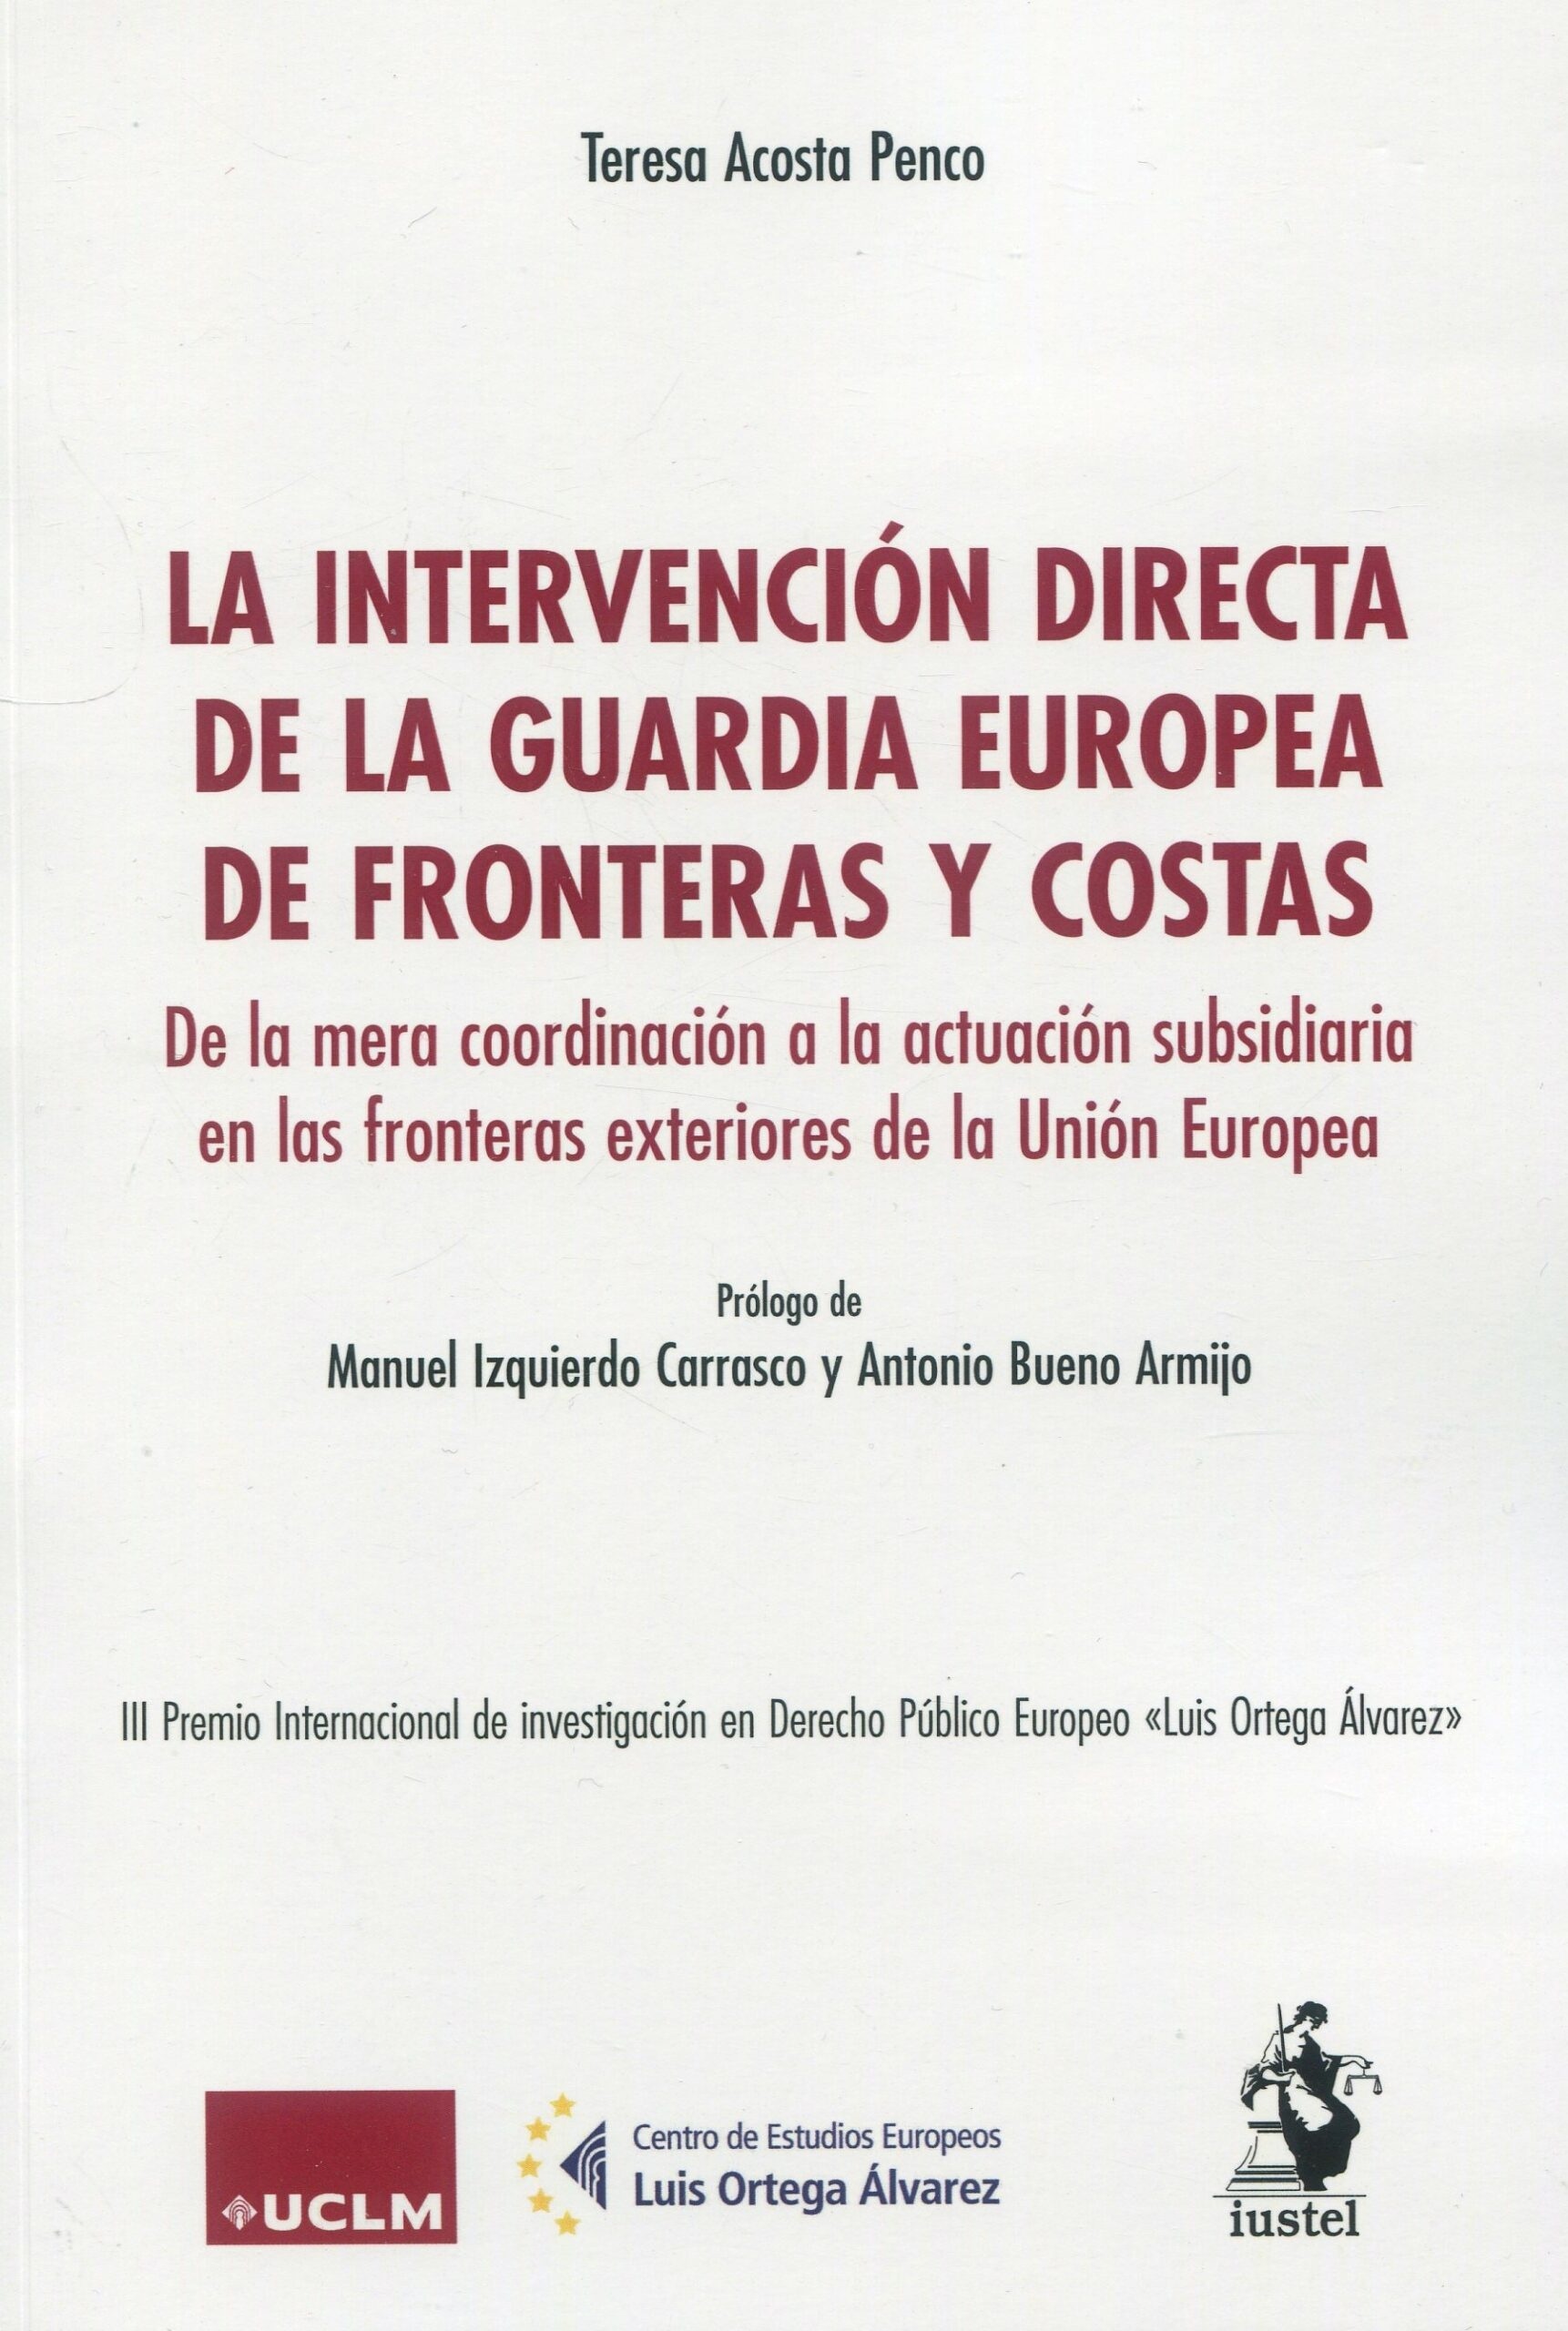 Intervención directa de la guardia europea de fronteras y costas "De la mera coordinación a la actuación subsidiaria en las fronteras exteriores de la Unión Europea"